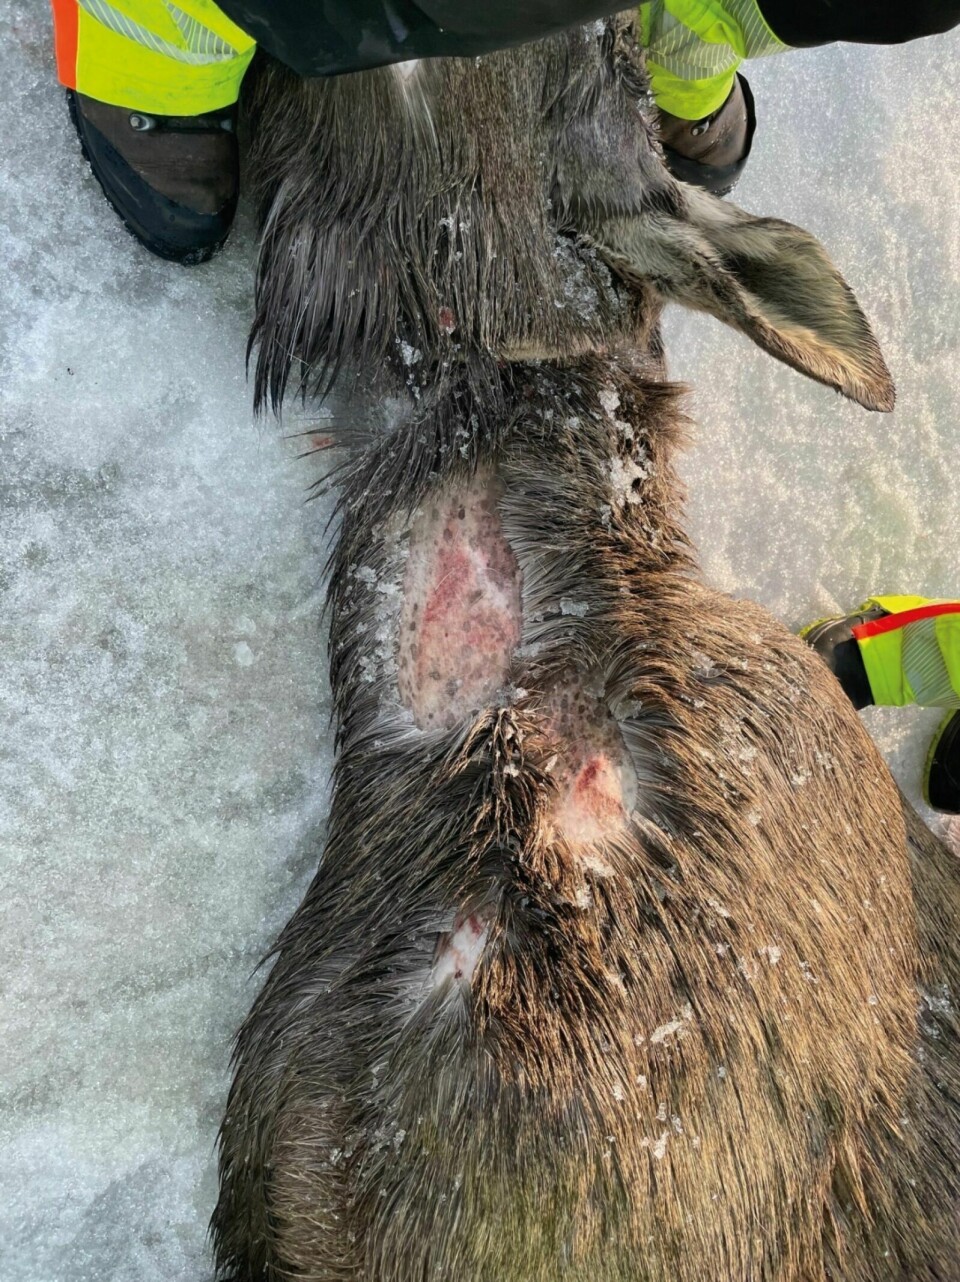 BETYDELIGE SKADER: Etter at elgen ble avlivet, ble det avdekket alvorlige skader på dyret. Foto: Jørn Larsen